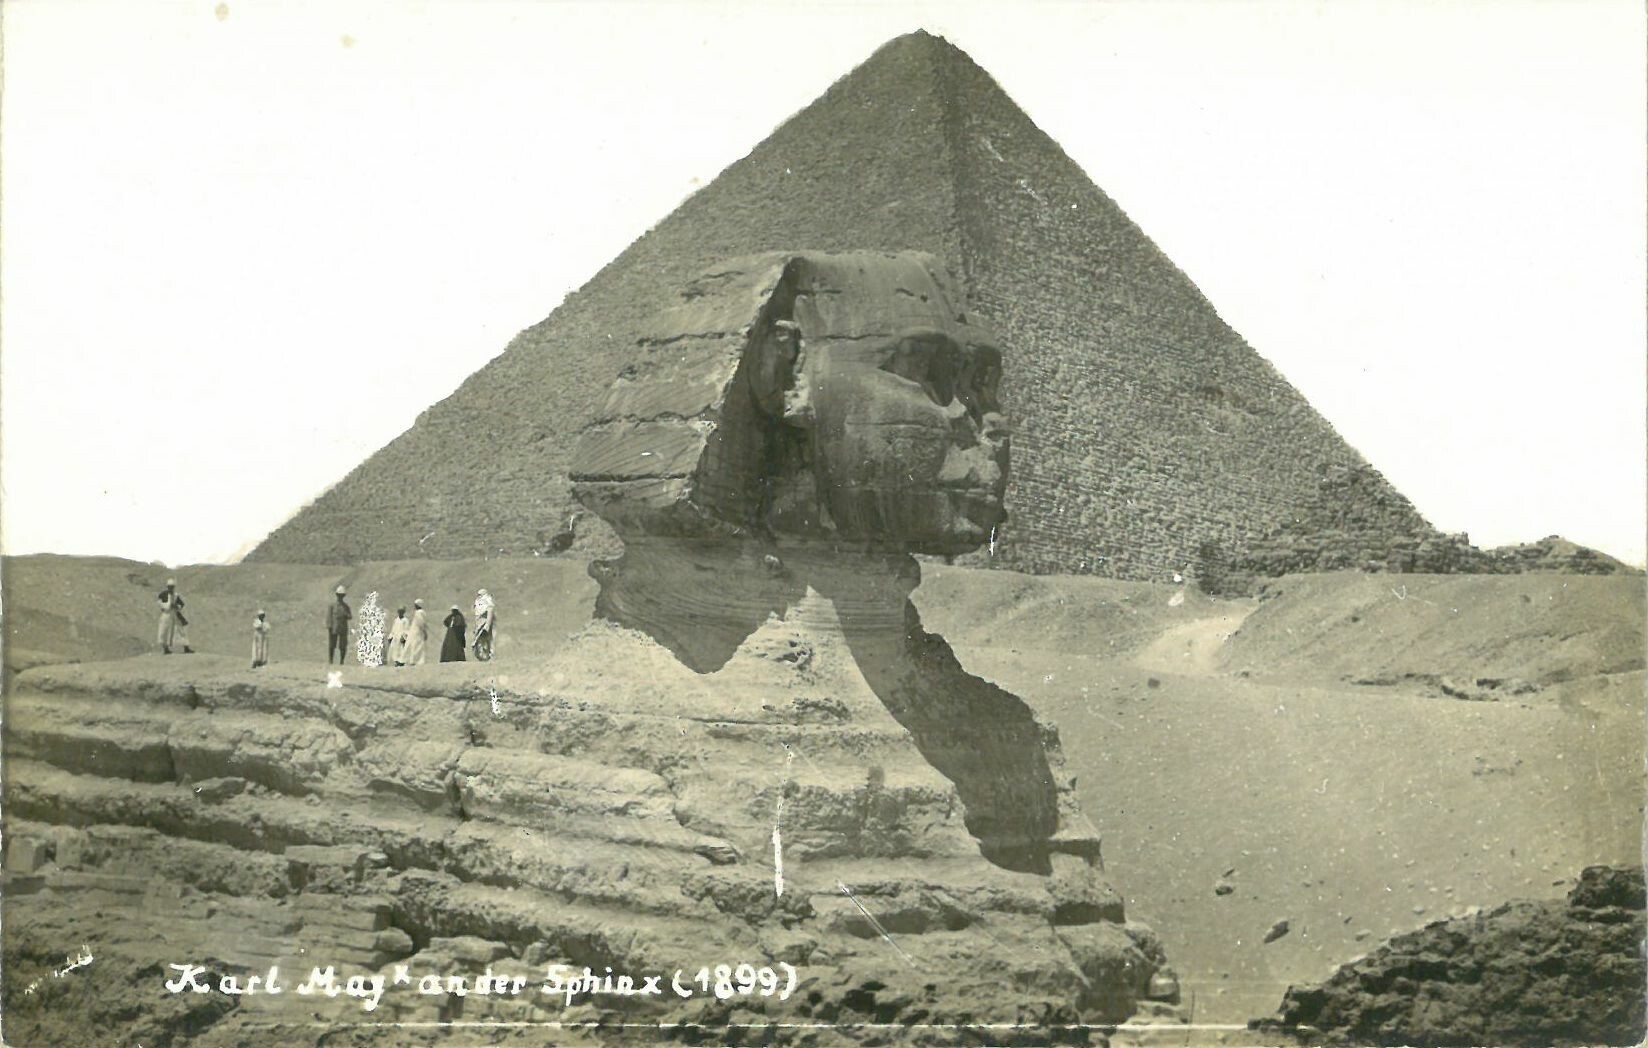 Karl May Karte, Karl May an der Sphinx 1899 (Karl-May-Museum gGmbH RR-R)